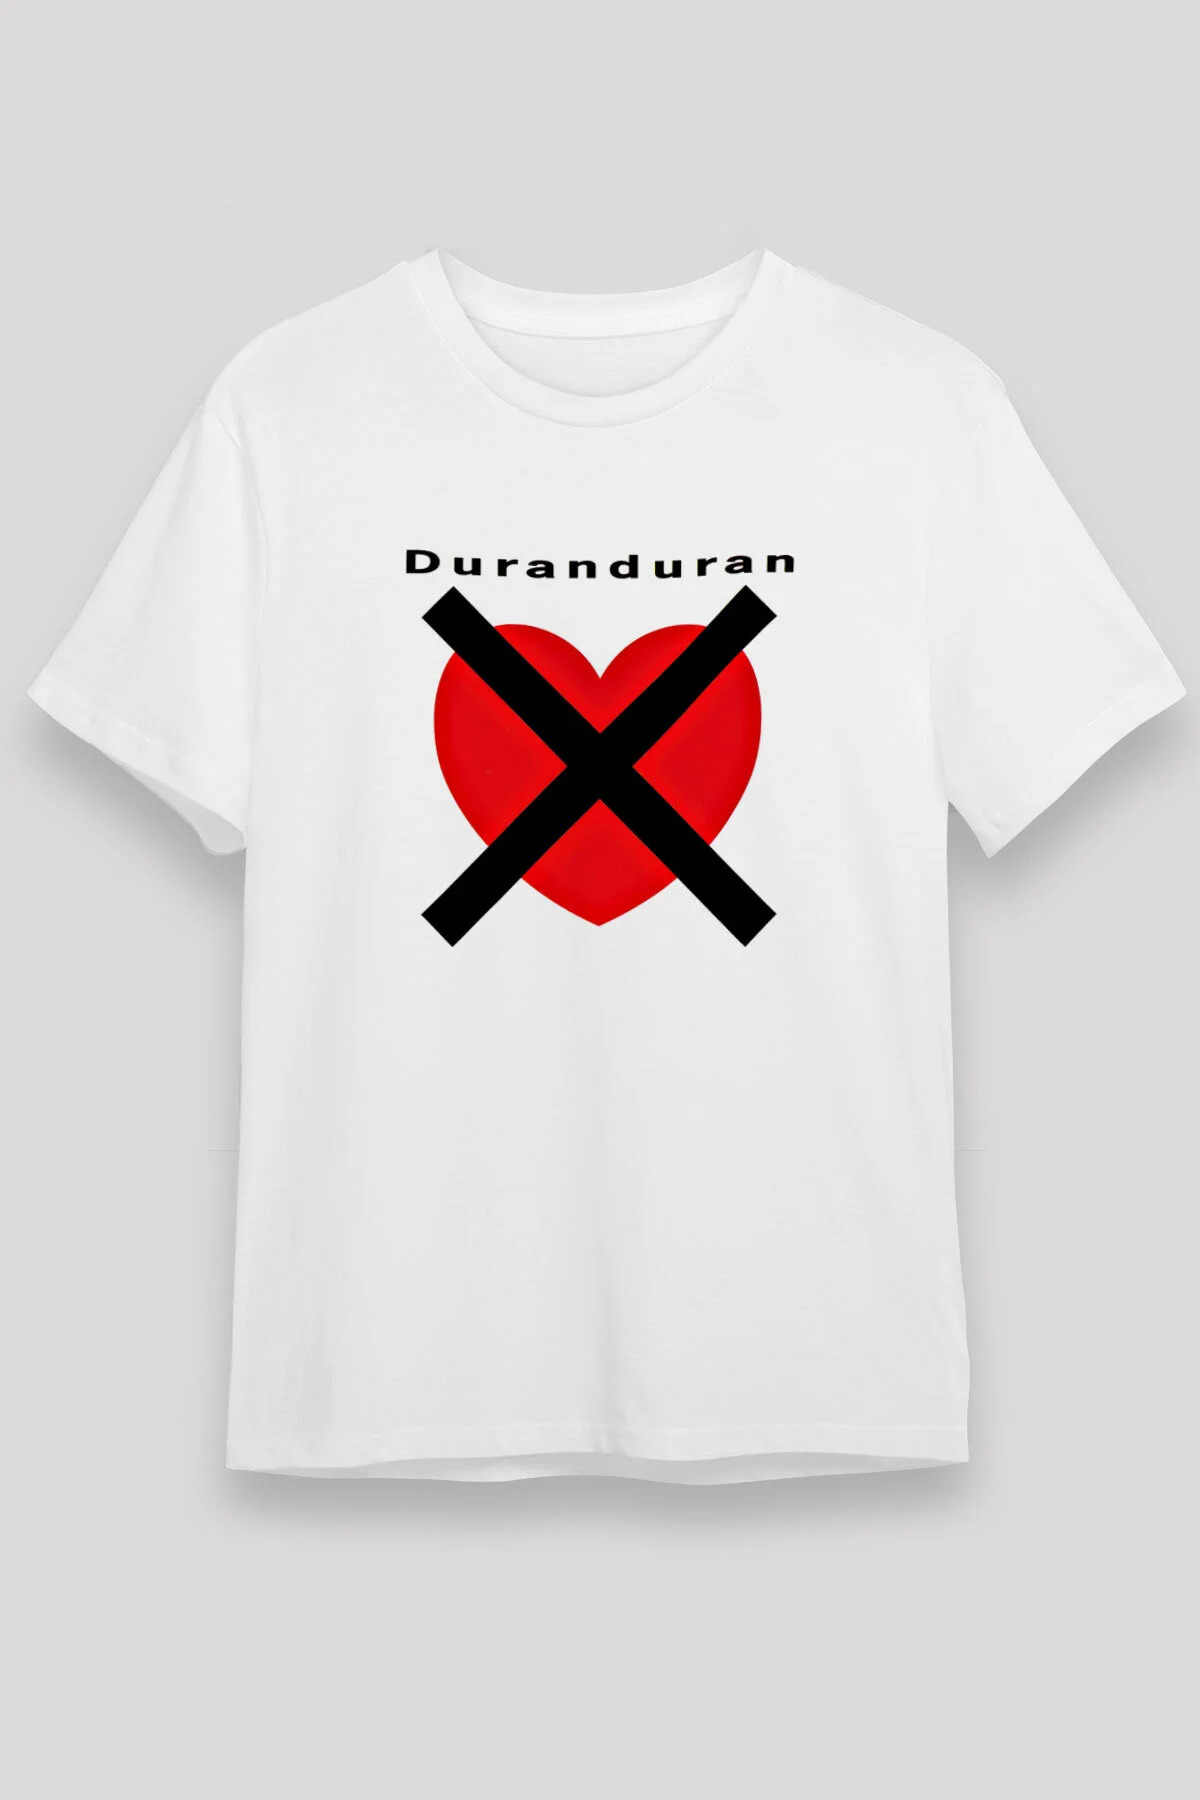 Duran Duran  T shirt , Music Band ,Unisex Tshirt  06